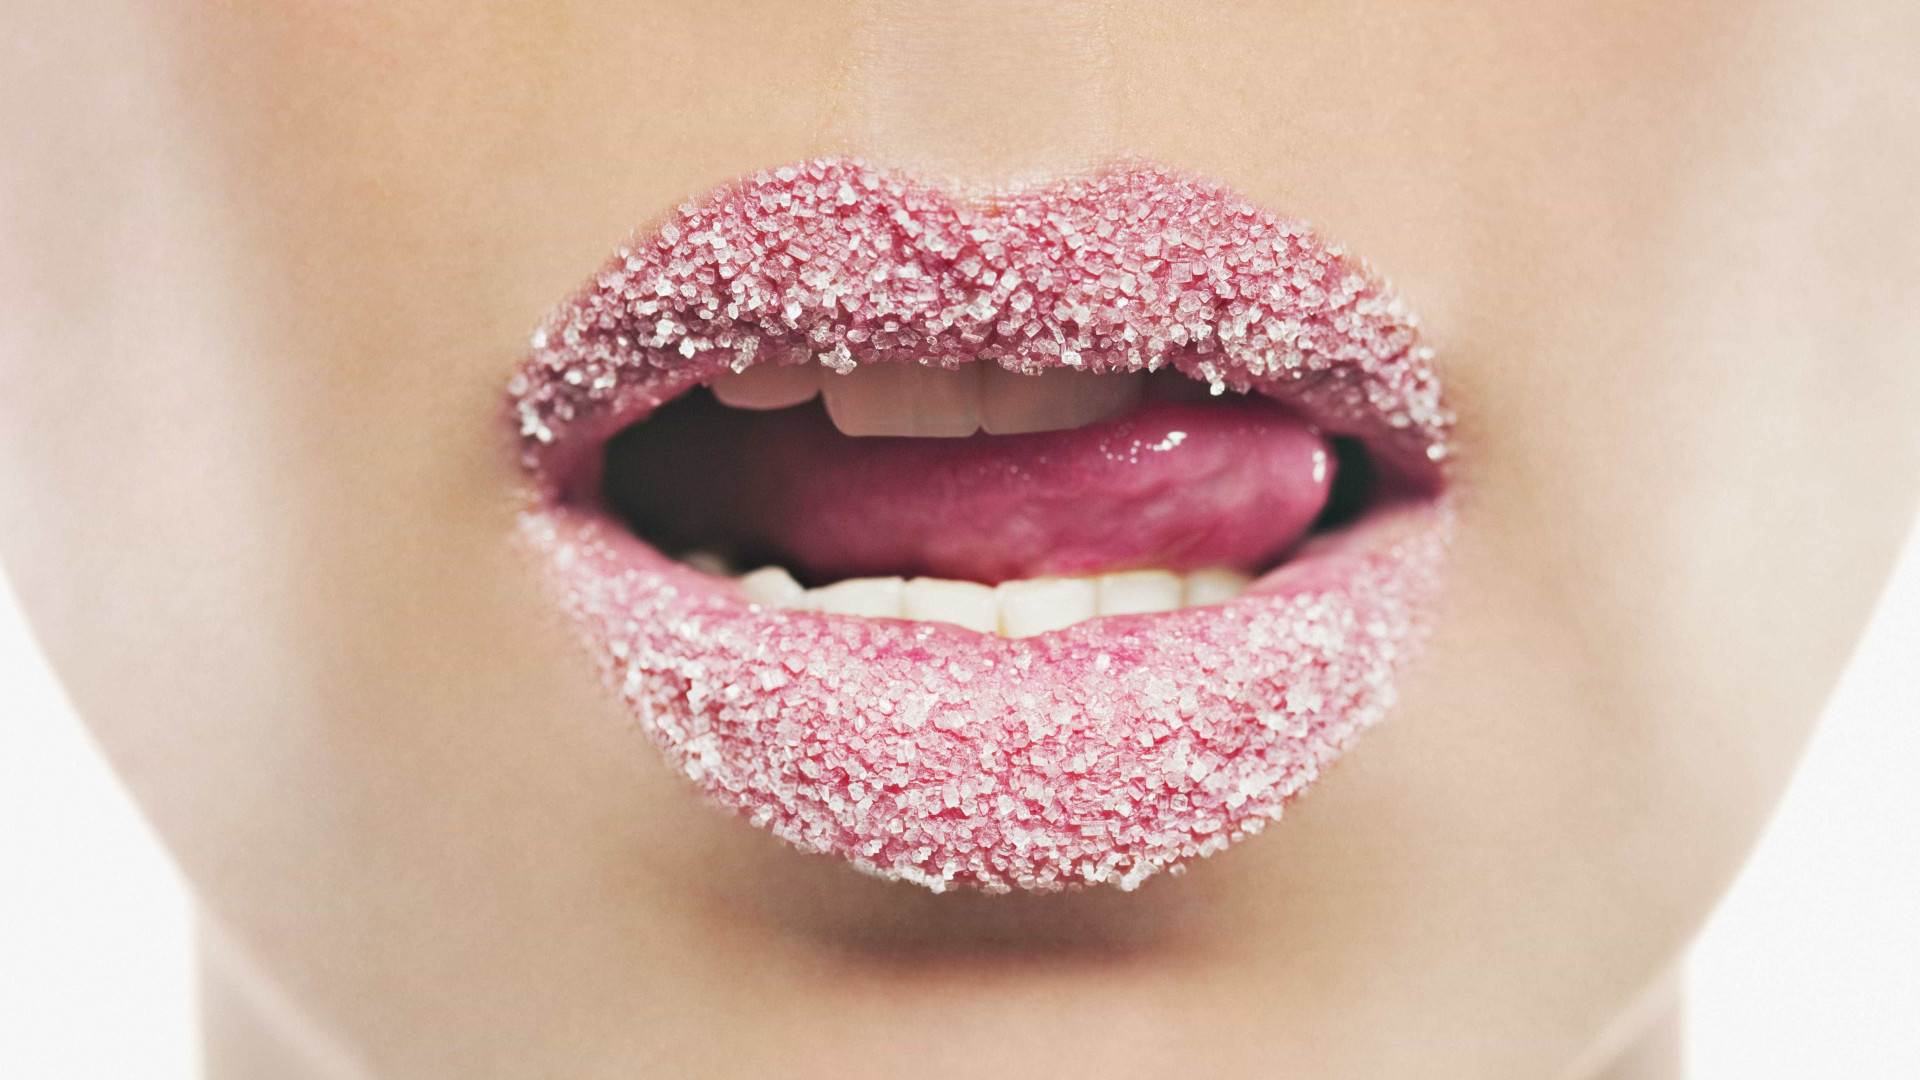 Consumo habitual de açúcar não aumenta desejo por doces, diz estudo